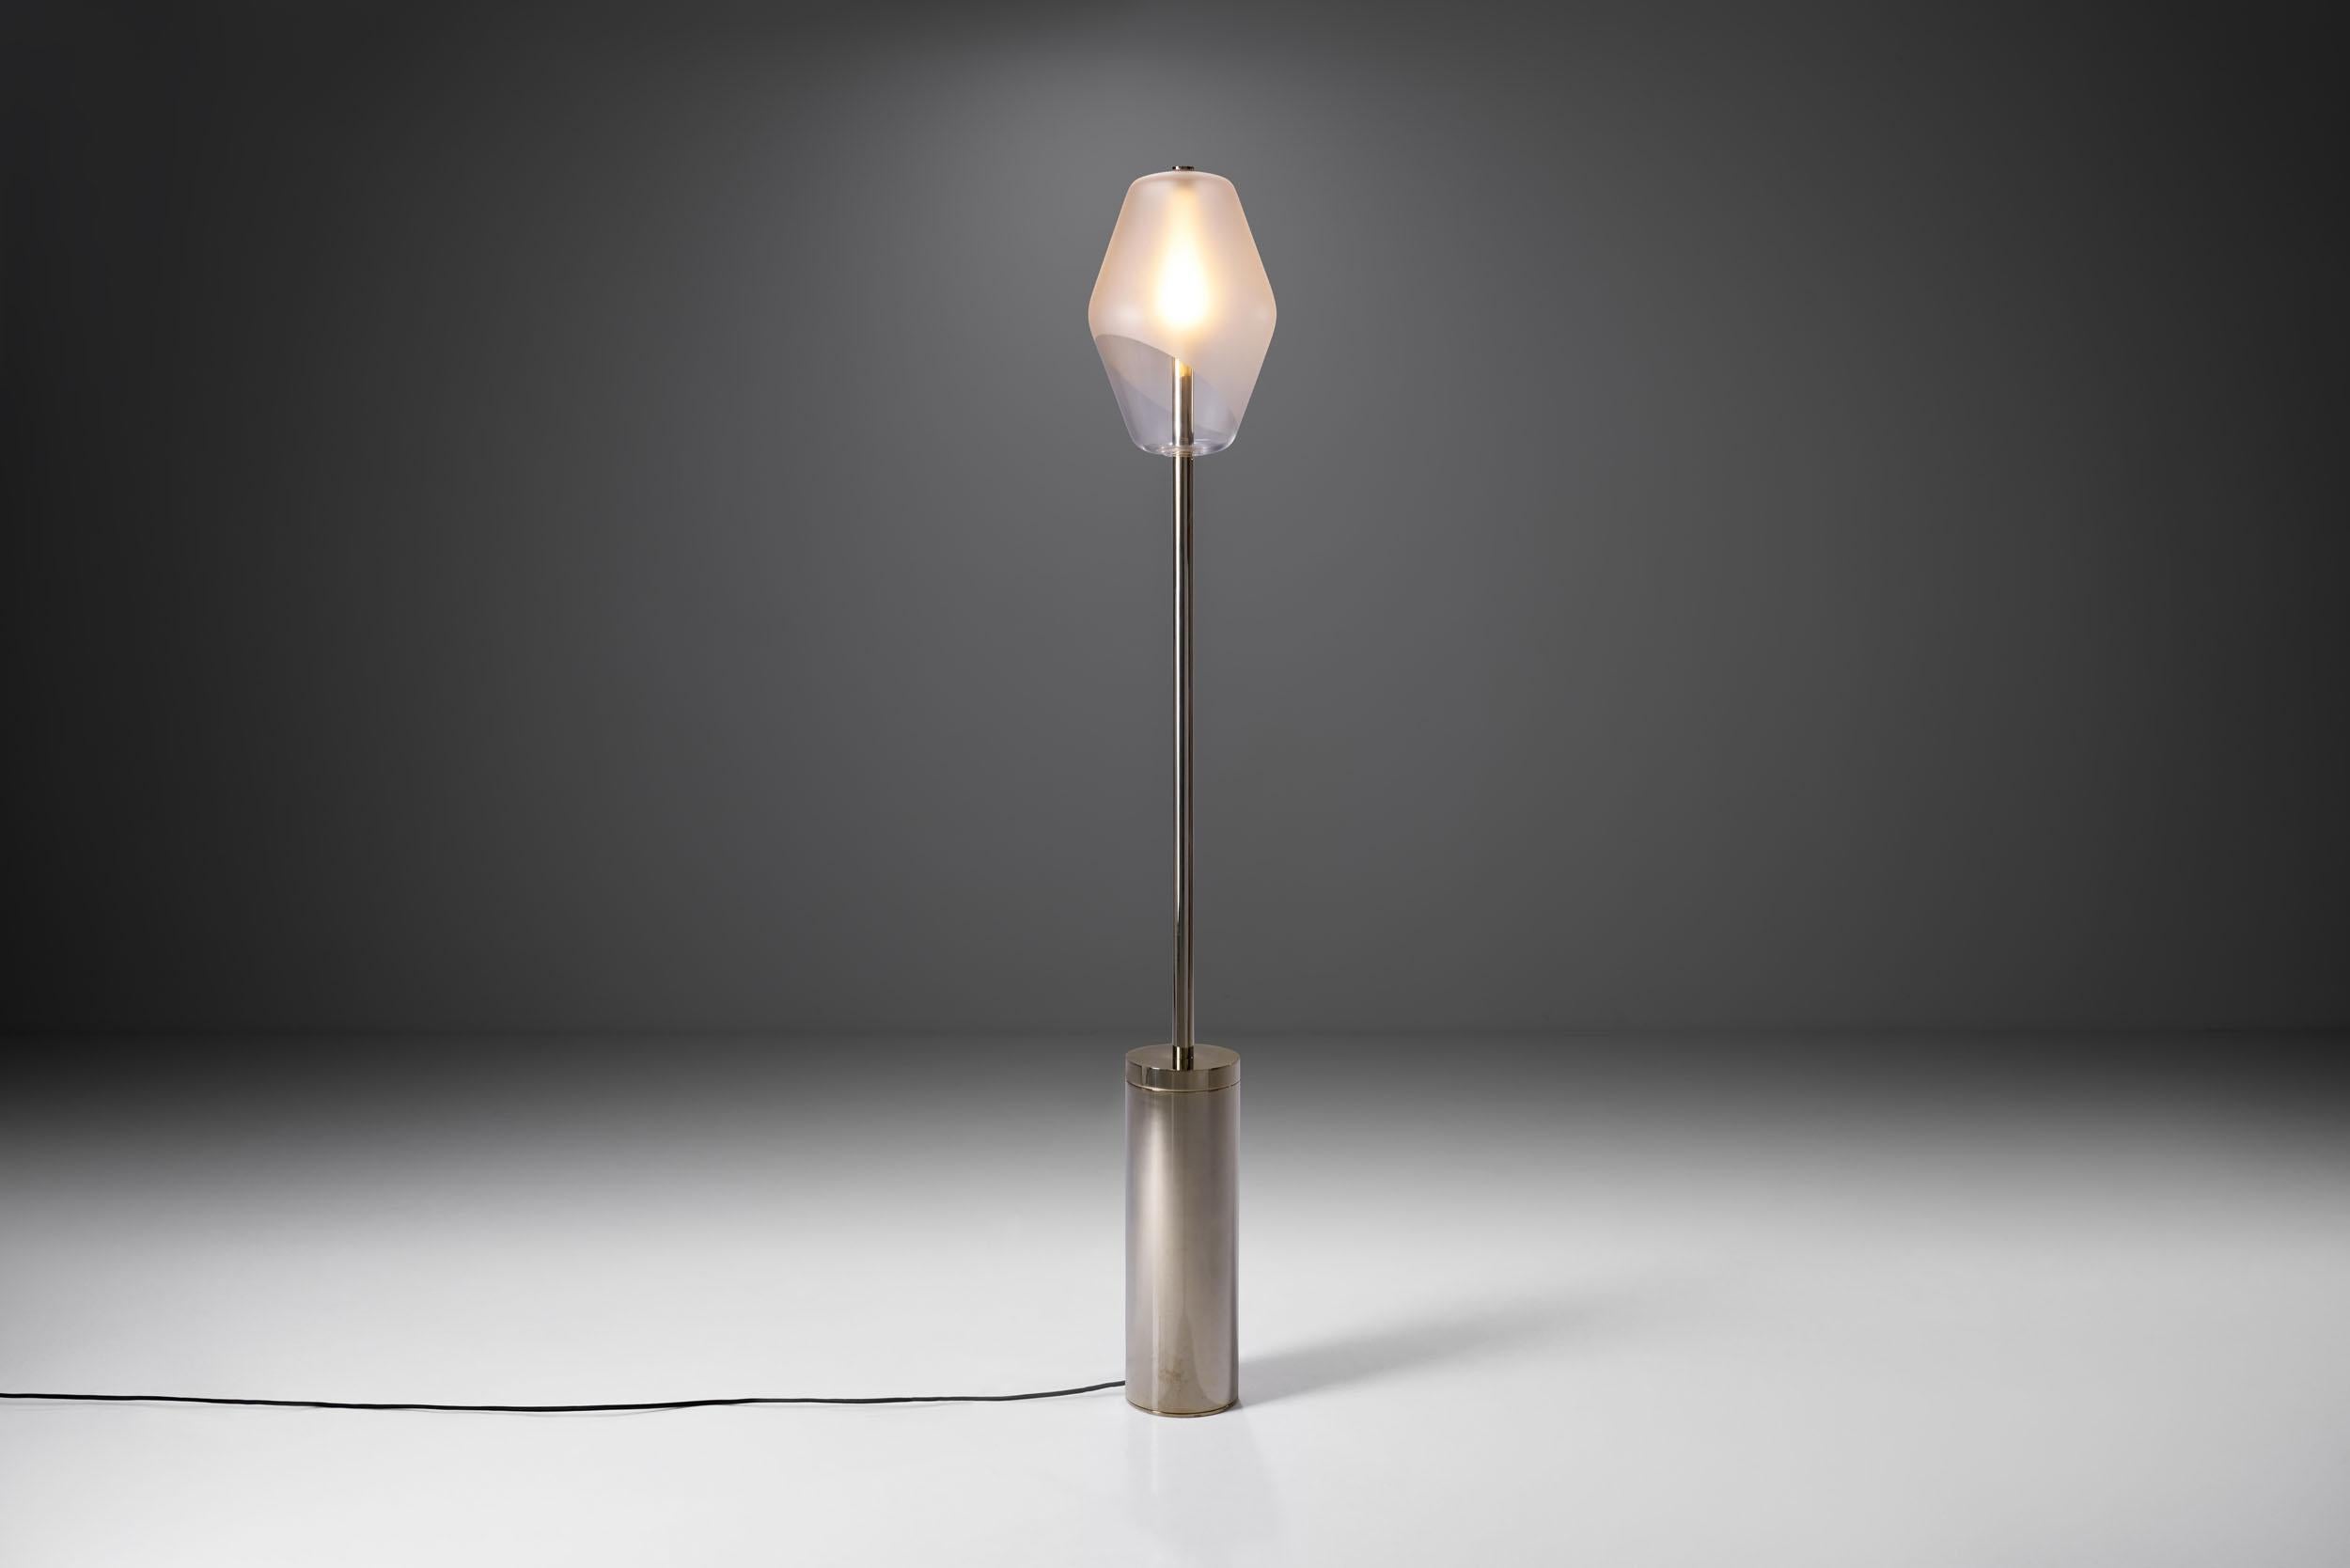 Inspiré par les lampadaires parisiens, Régis Botta a conçu ce lampadaire pour créer une lumière ambiante et chaleureuse. Ce lampadaire est le plus remarquable de la collection 